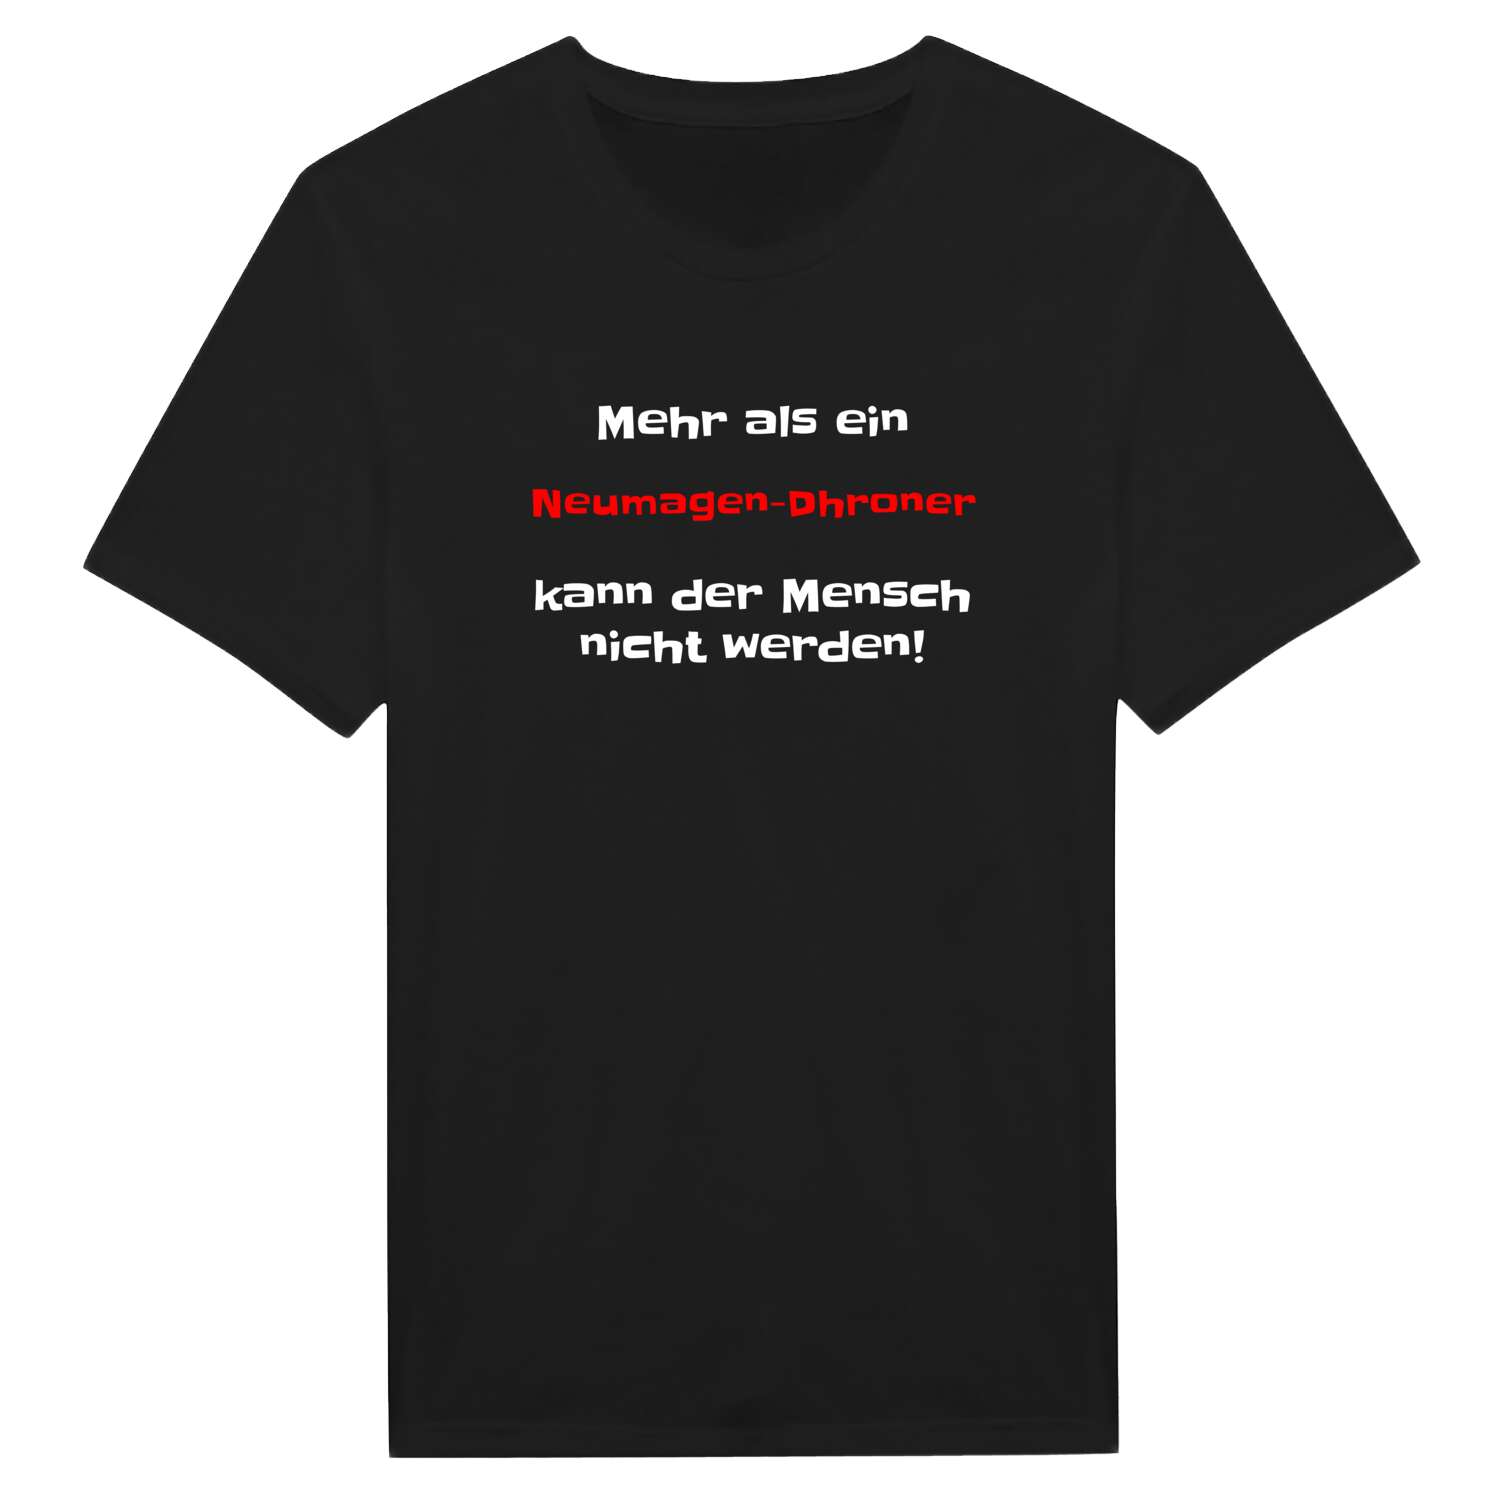 Neumagen-Dhron T-Shirt »Mehr als ein«